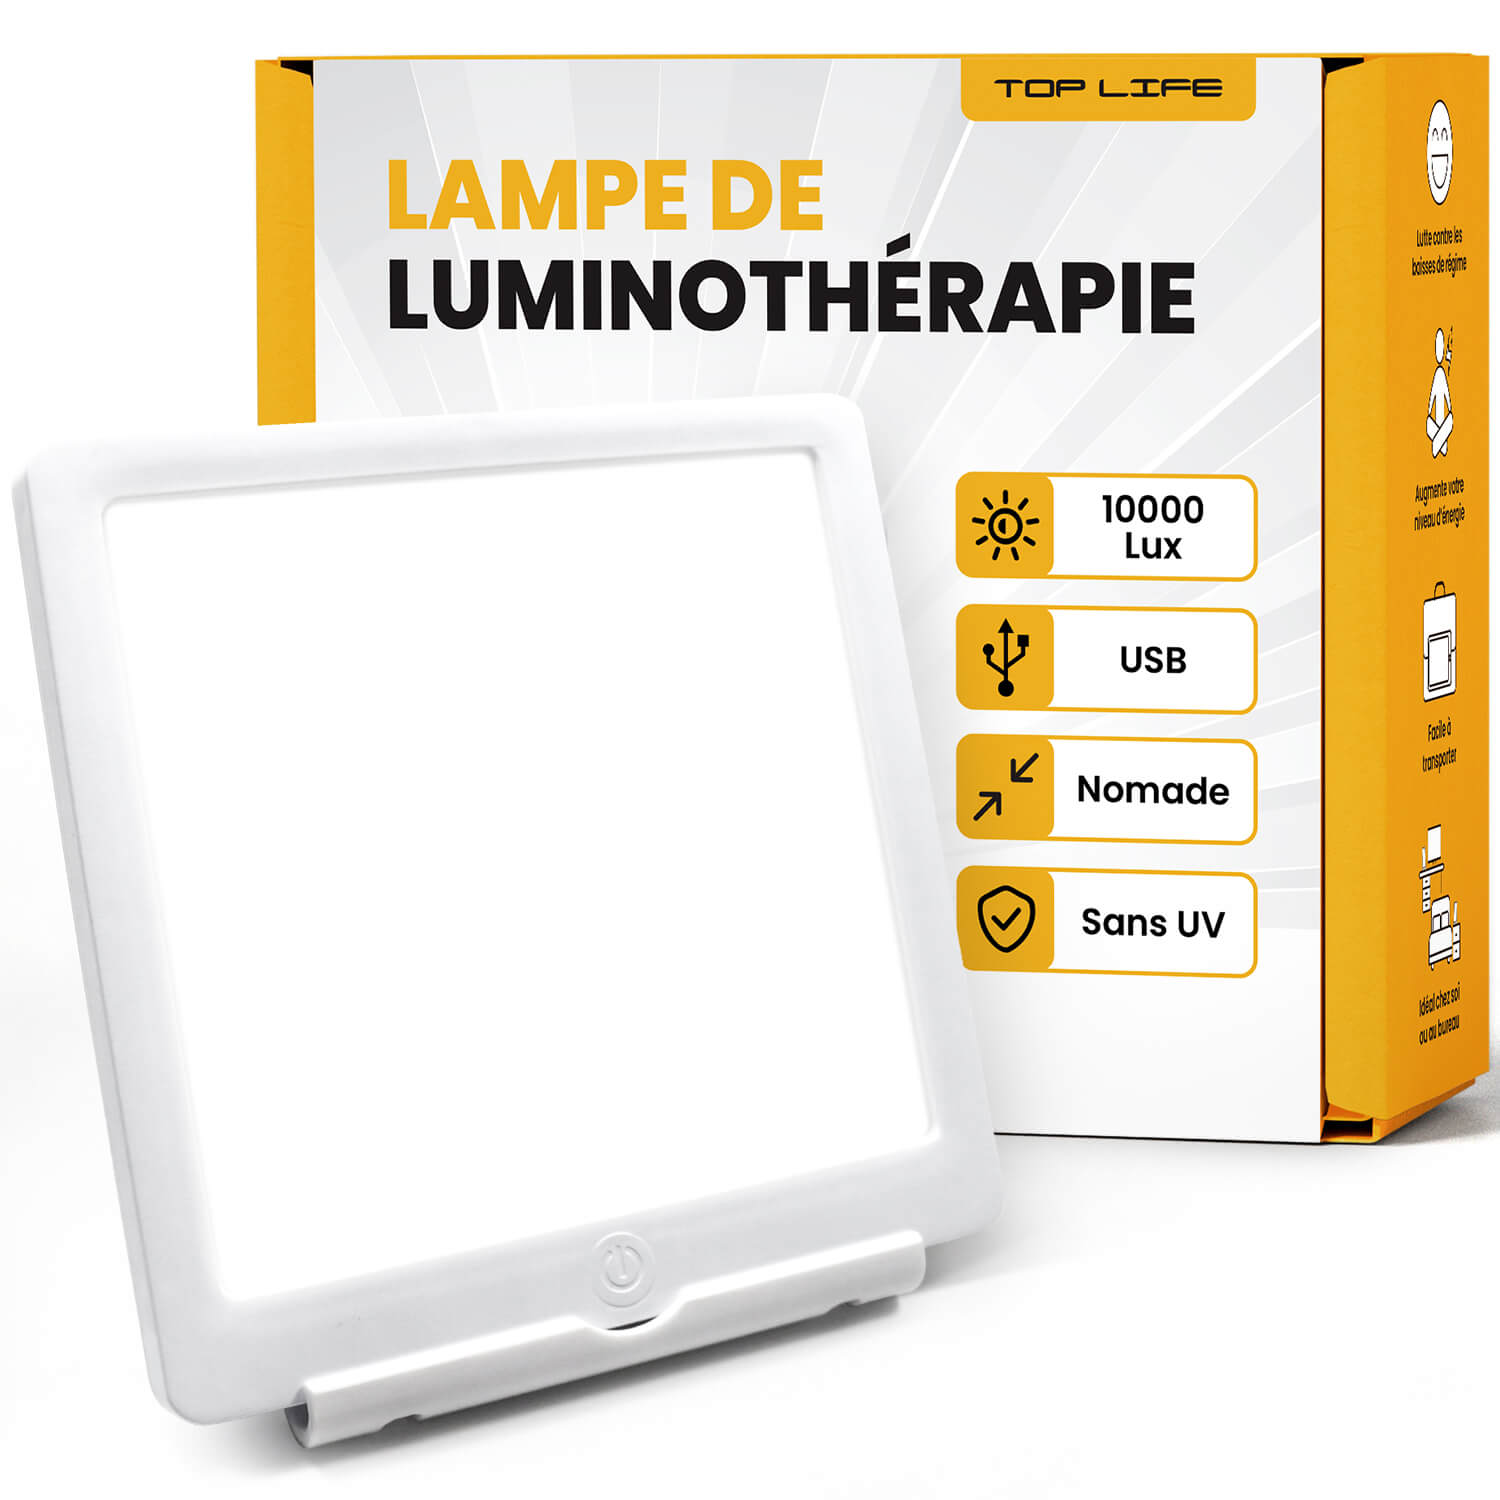 Nos conseils pour bien utiliser votre lampe de luminothérapie